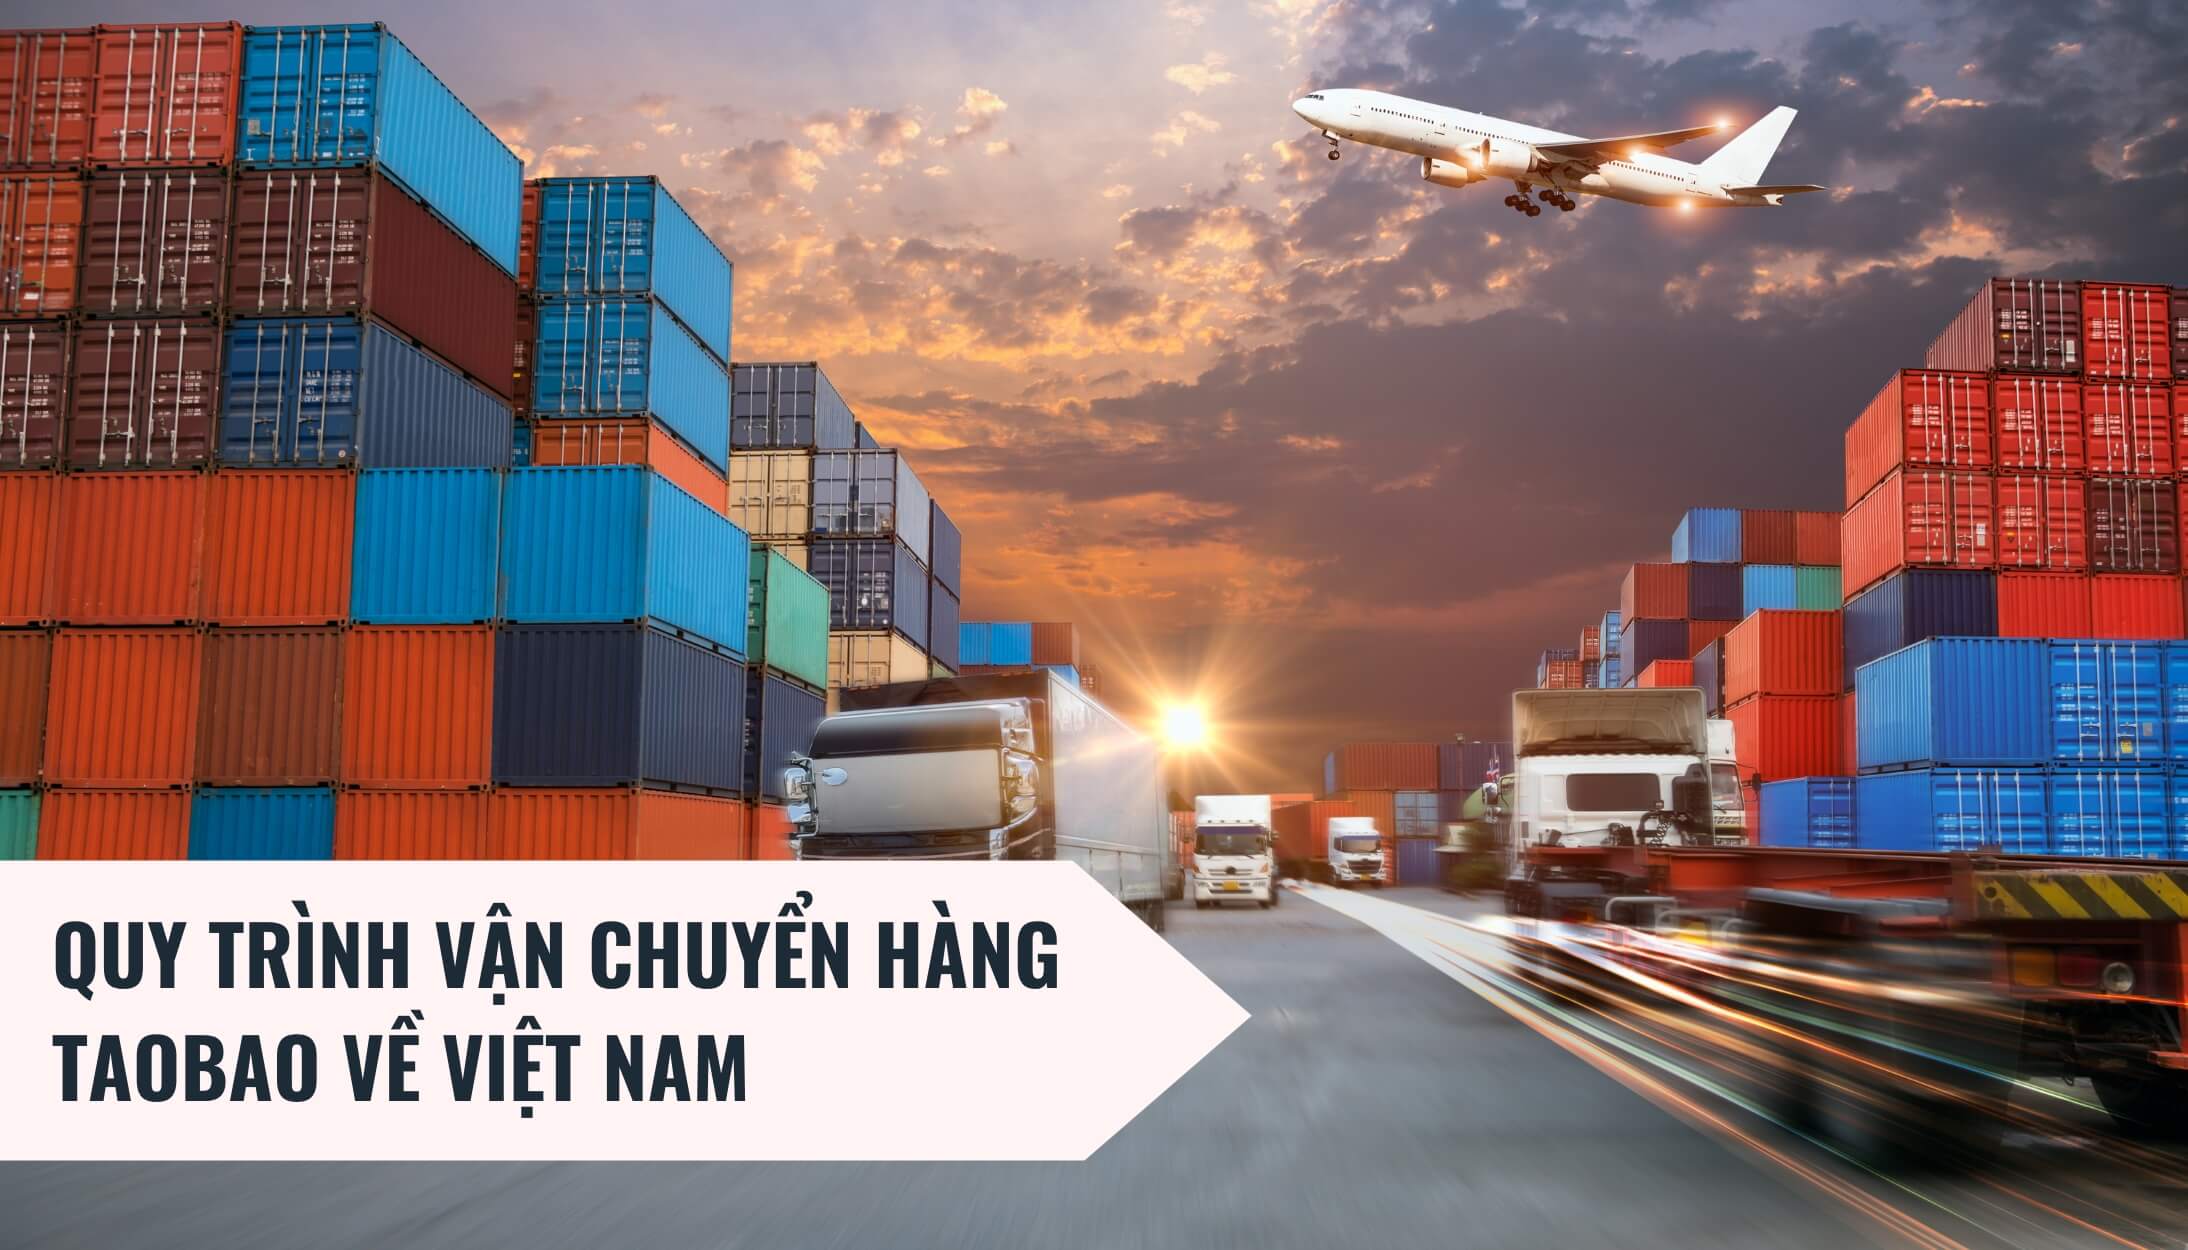 Quy trình vận chuyển hàng Taobao về Việt Nam